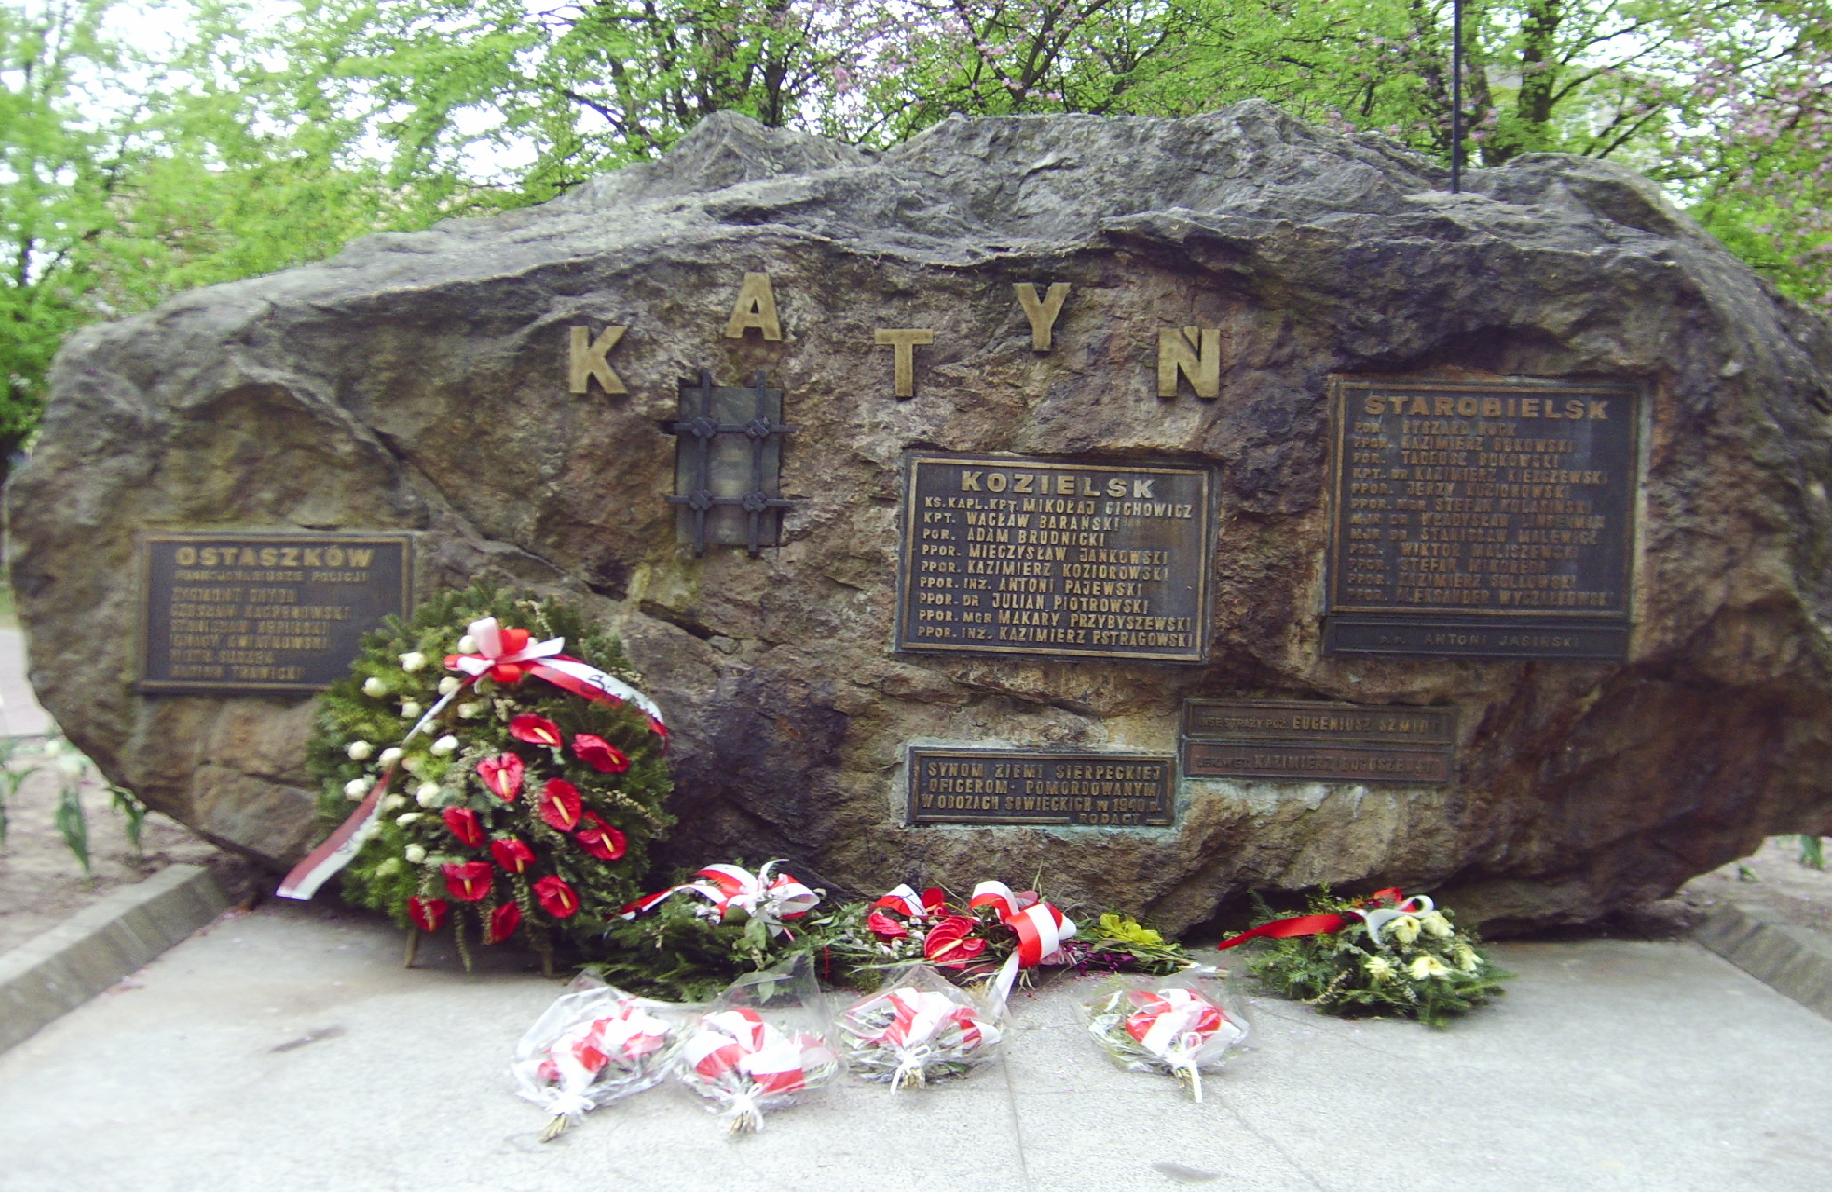 Pomnik ku czci ofiar pomordowanych w Katyniu, Kozielsku, Starobielsku i Ostaszkowie, znajdujcy si w Parku im. Solidarnoci. Fot. dnia 22.04.2009 r.